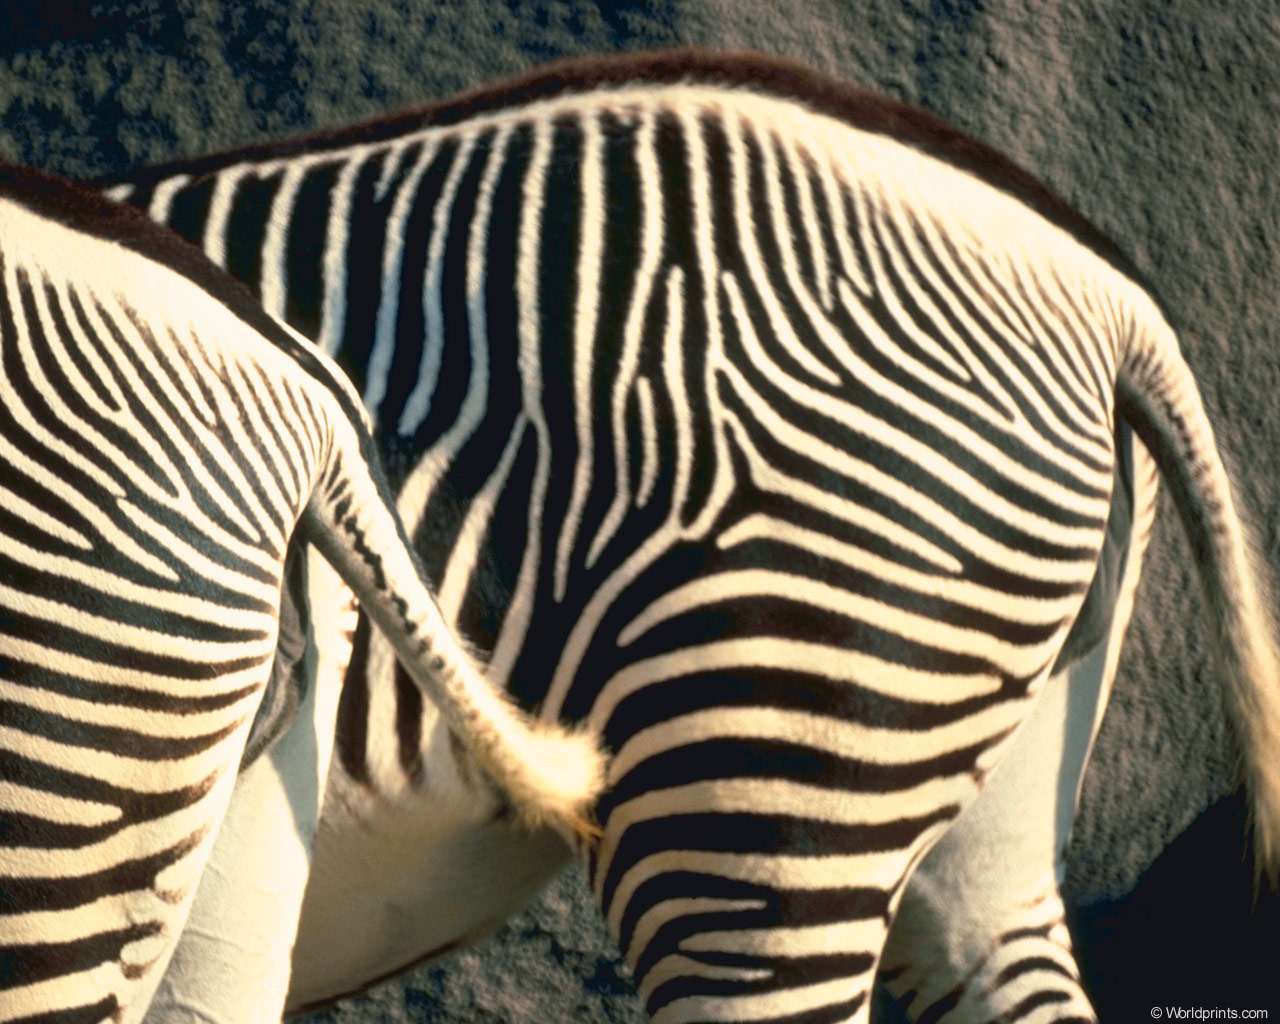 Какого цвета хвост у зебры? фото, хвост зебры фото обои рабочий стол зебры,  фото фотографии непарнокопытные животные картинка изображение зебры  лошадиные wallpaper desktop